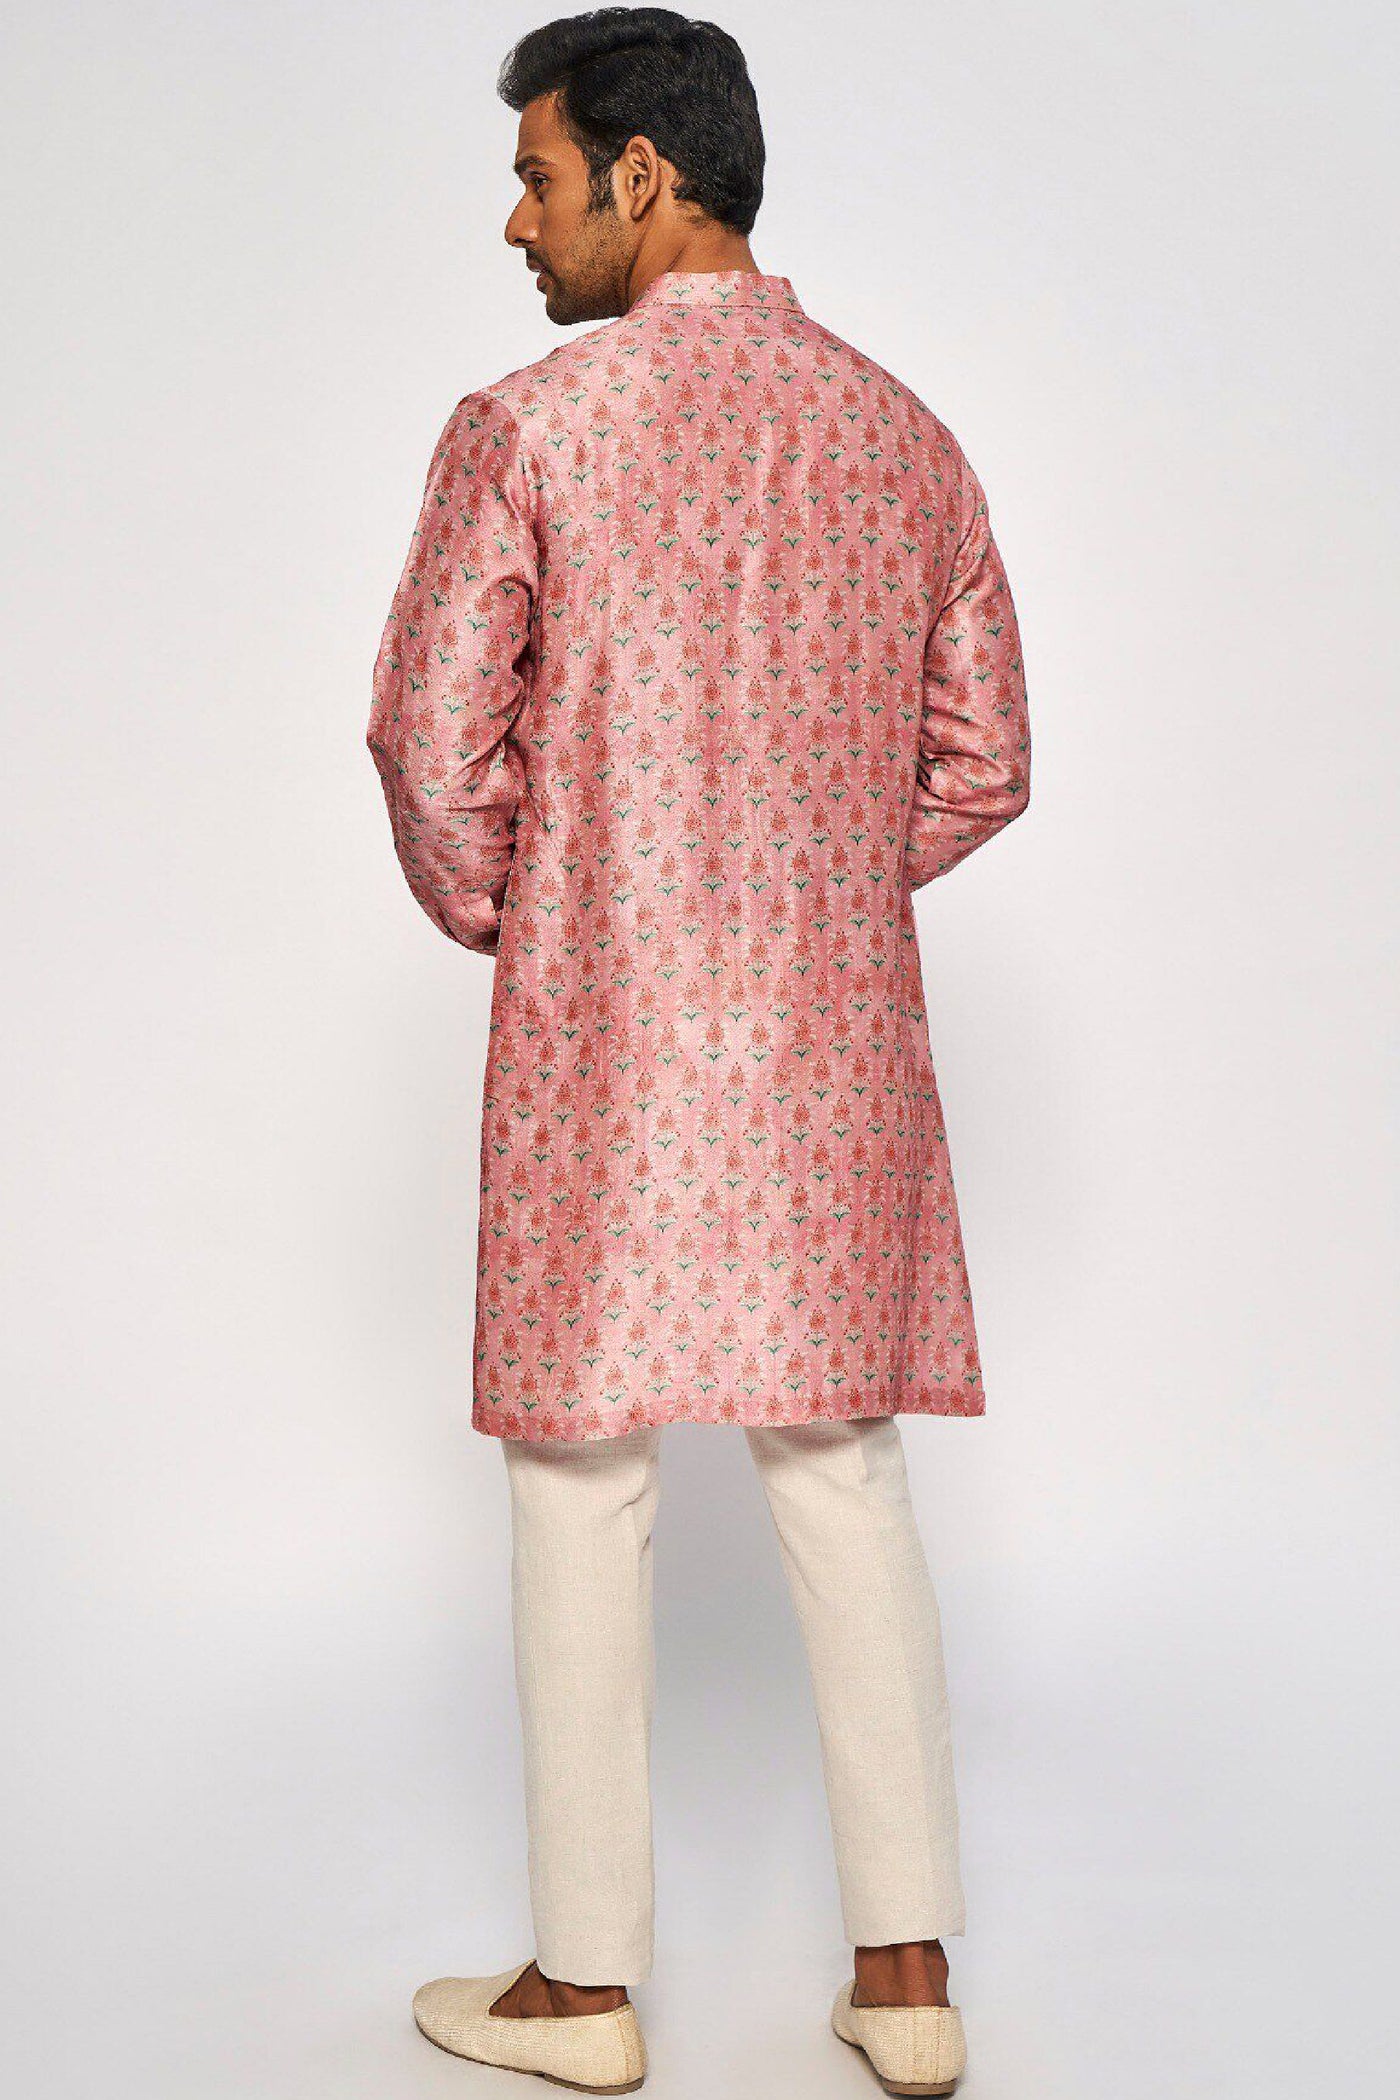 Anita Dongre Menswear Nasim Kurta Pink Indian designer wear online shopping melange singapore